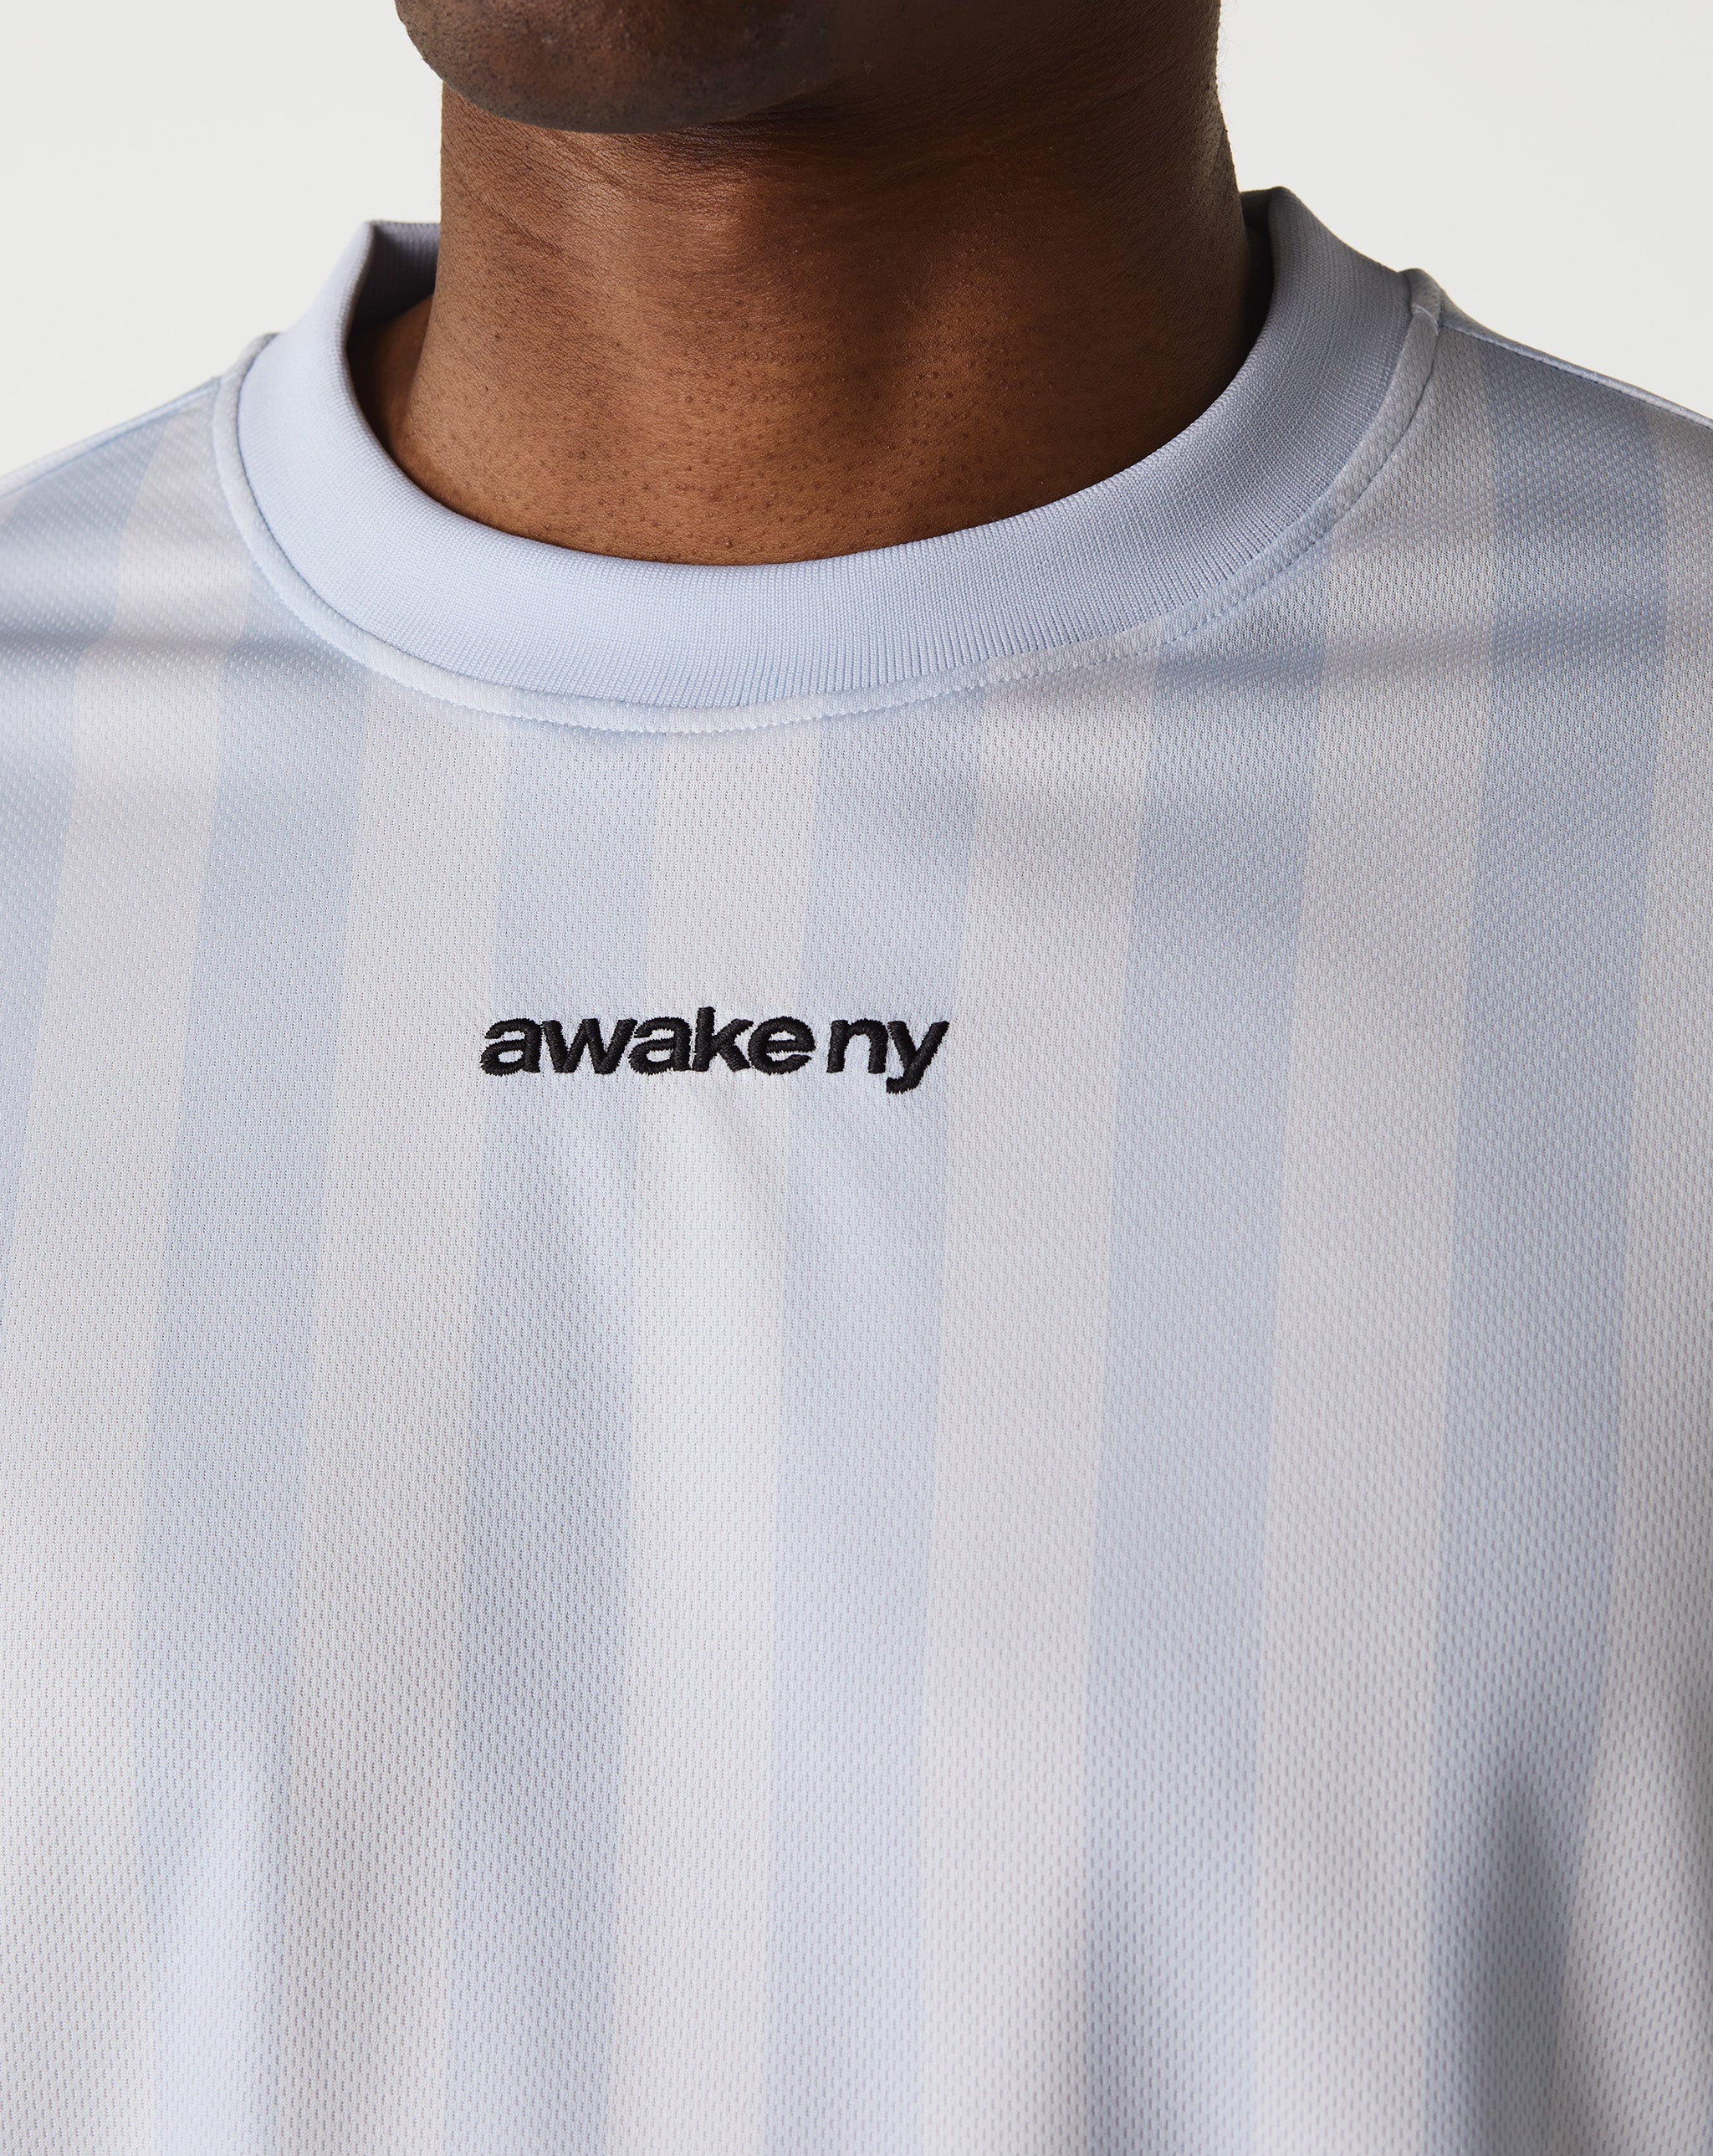 Awake NY Soccer Jersey  - XHIBITION